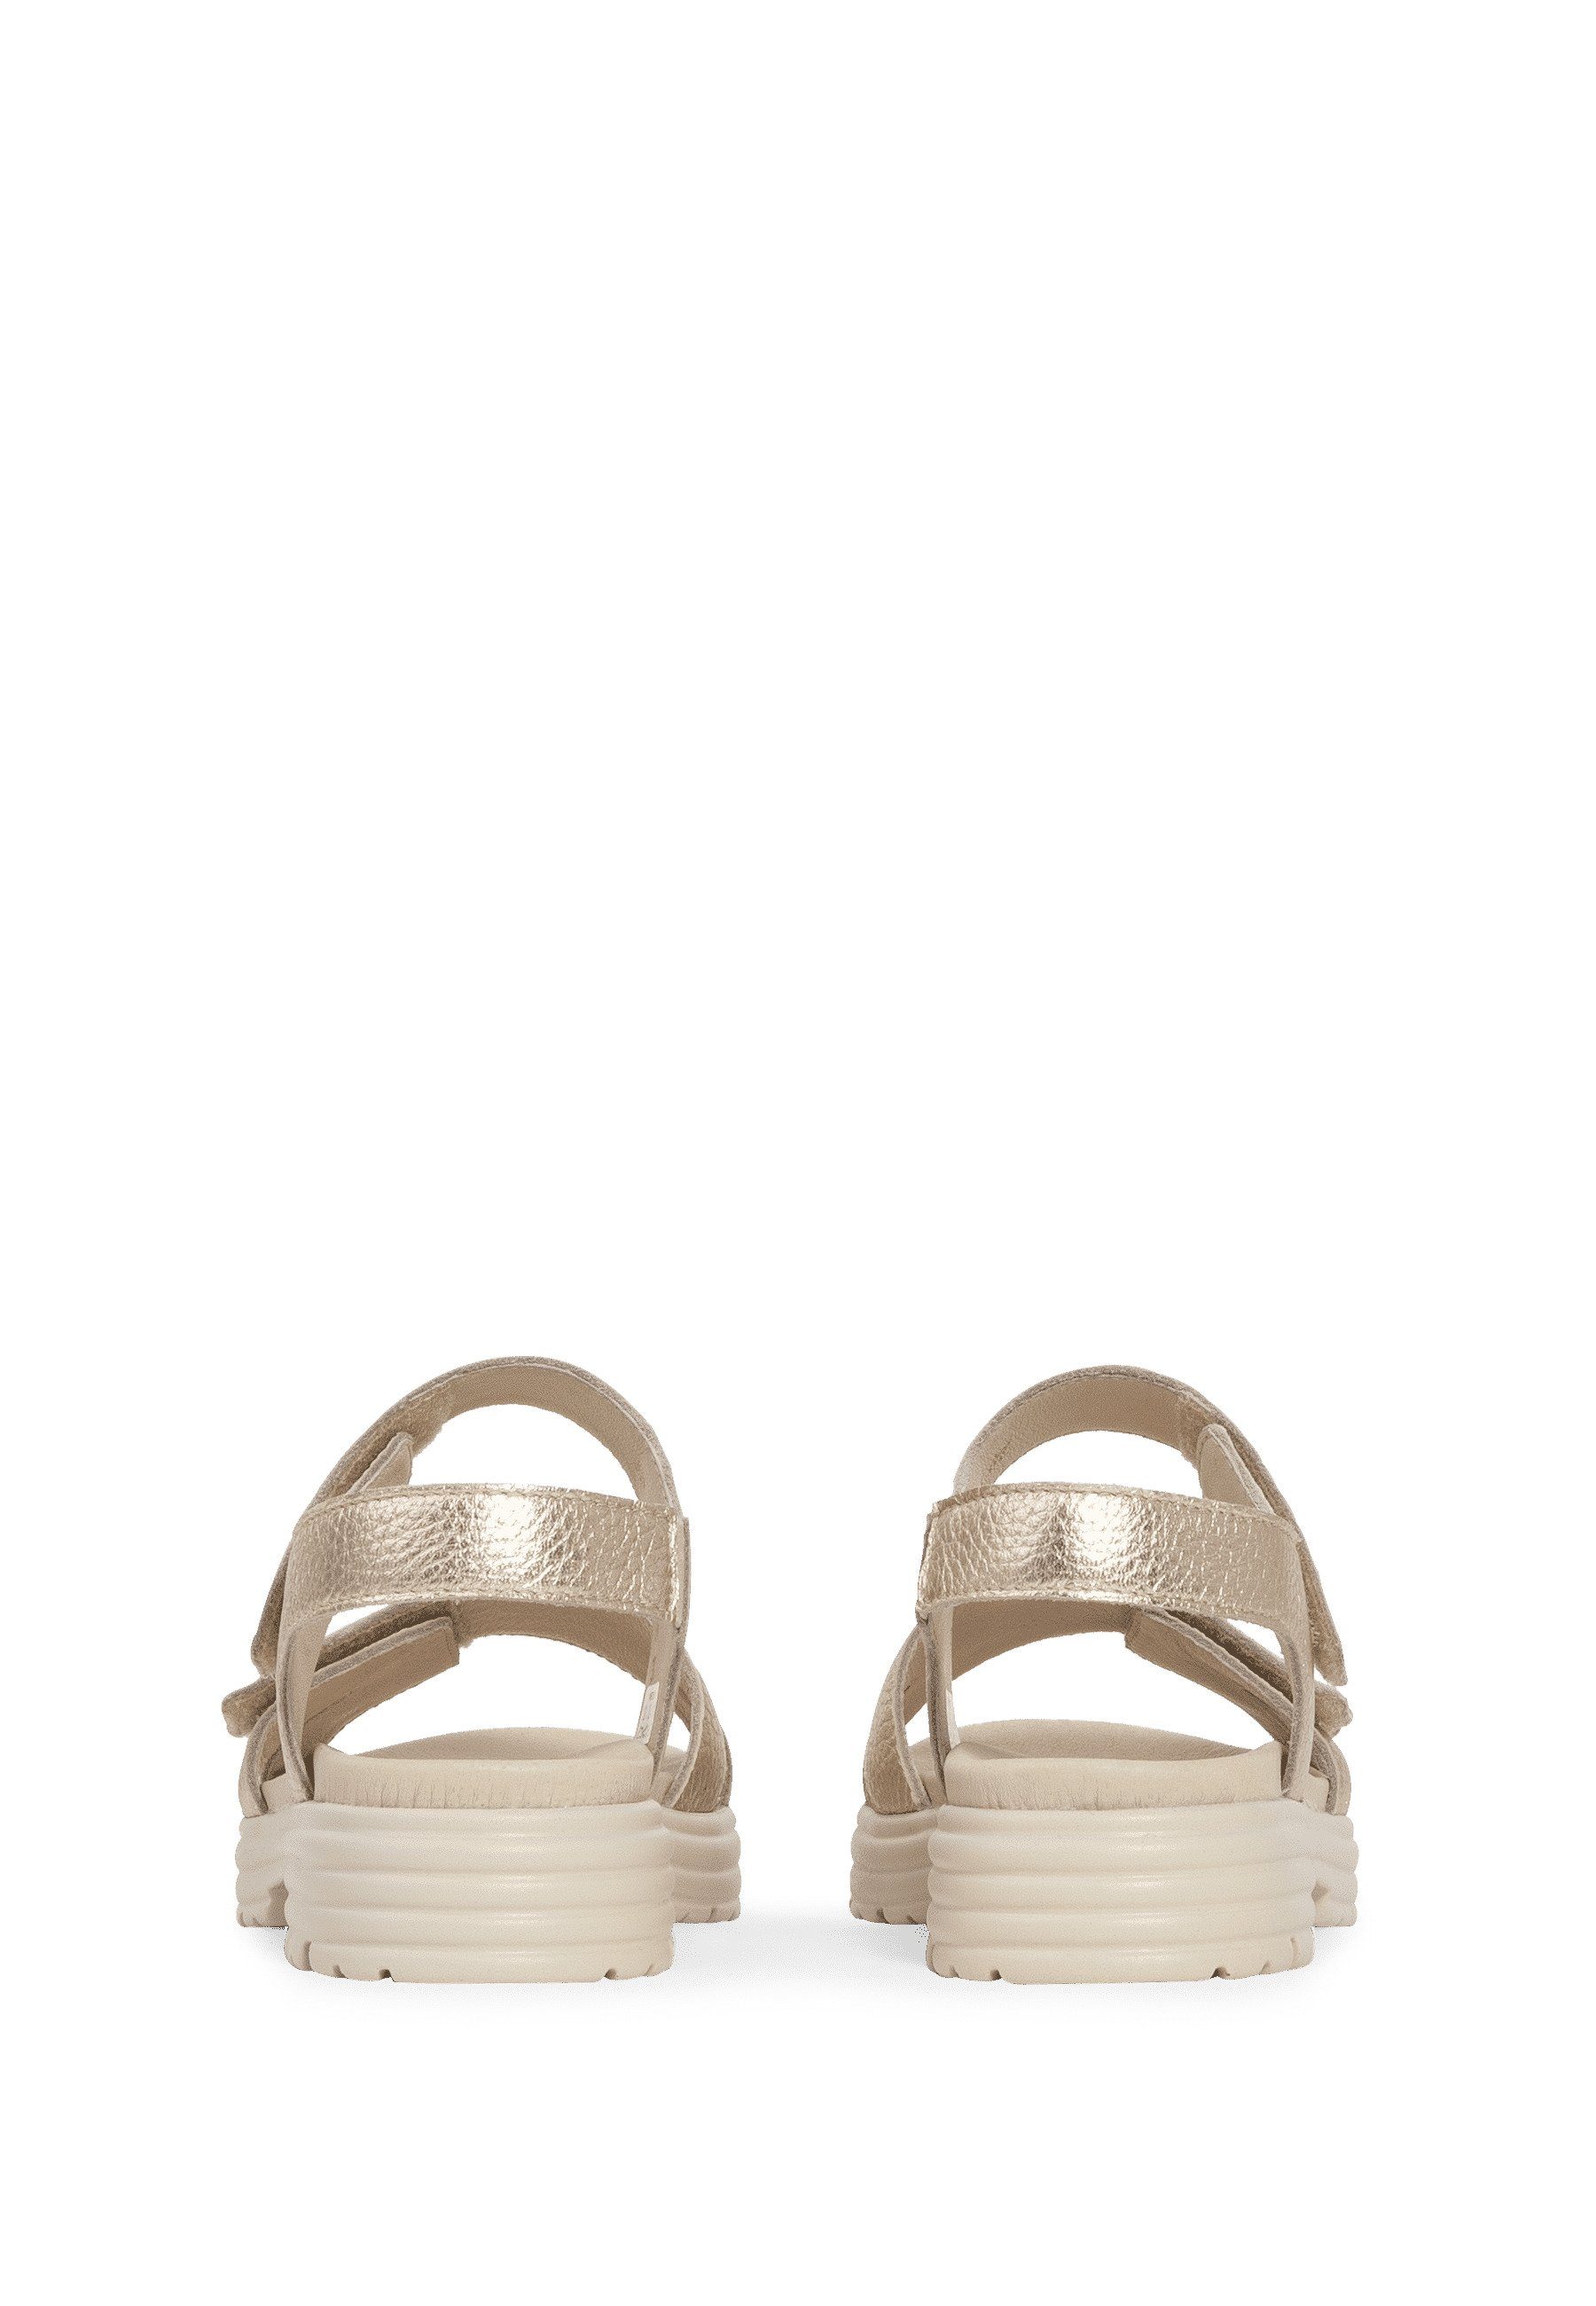 Sandale vitaform gold Hirschleder Damenschuhe Sandale